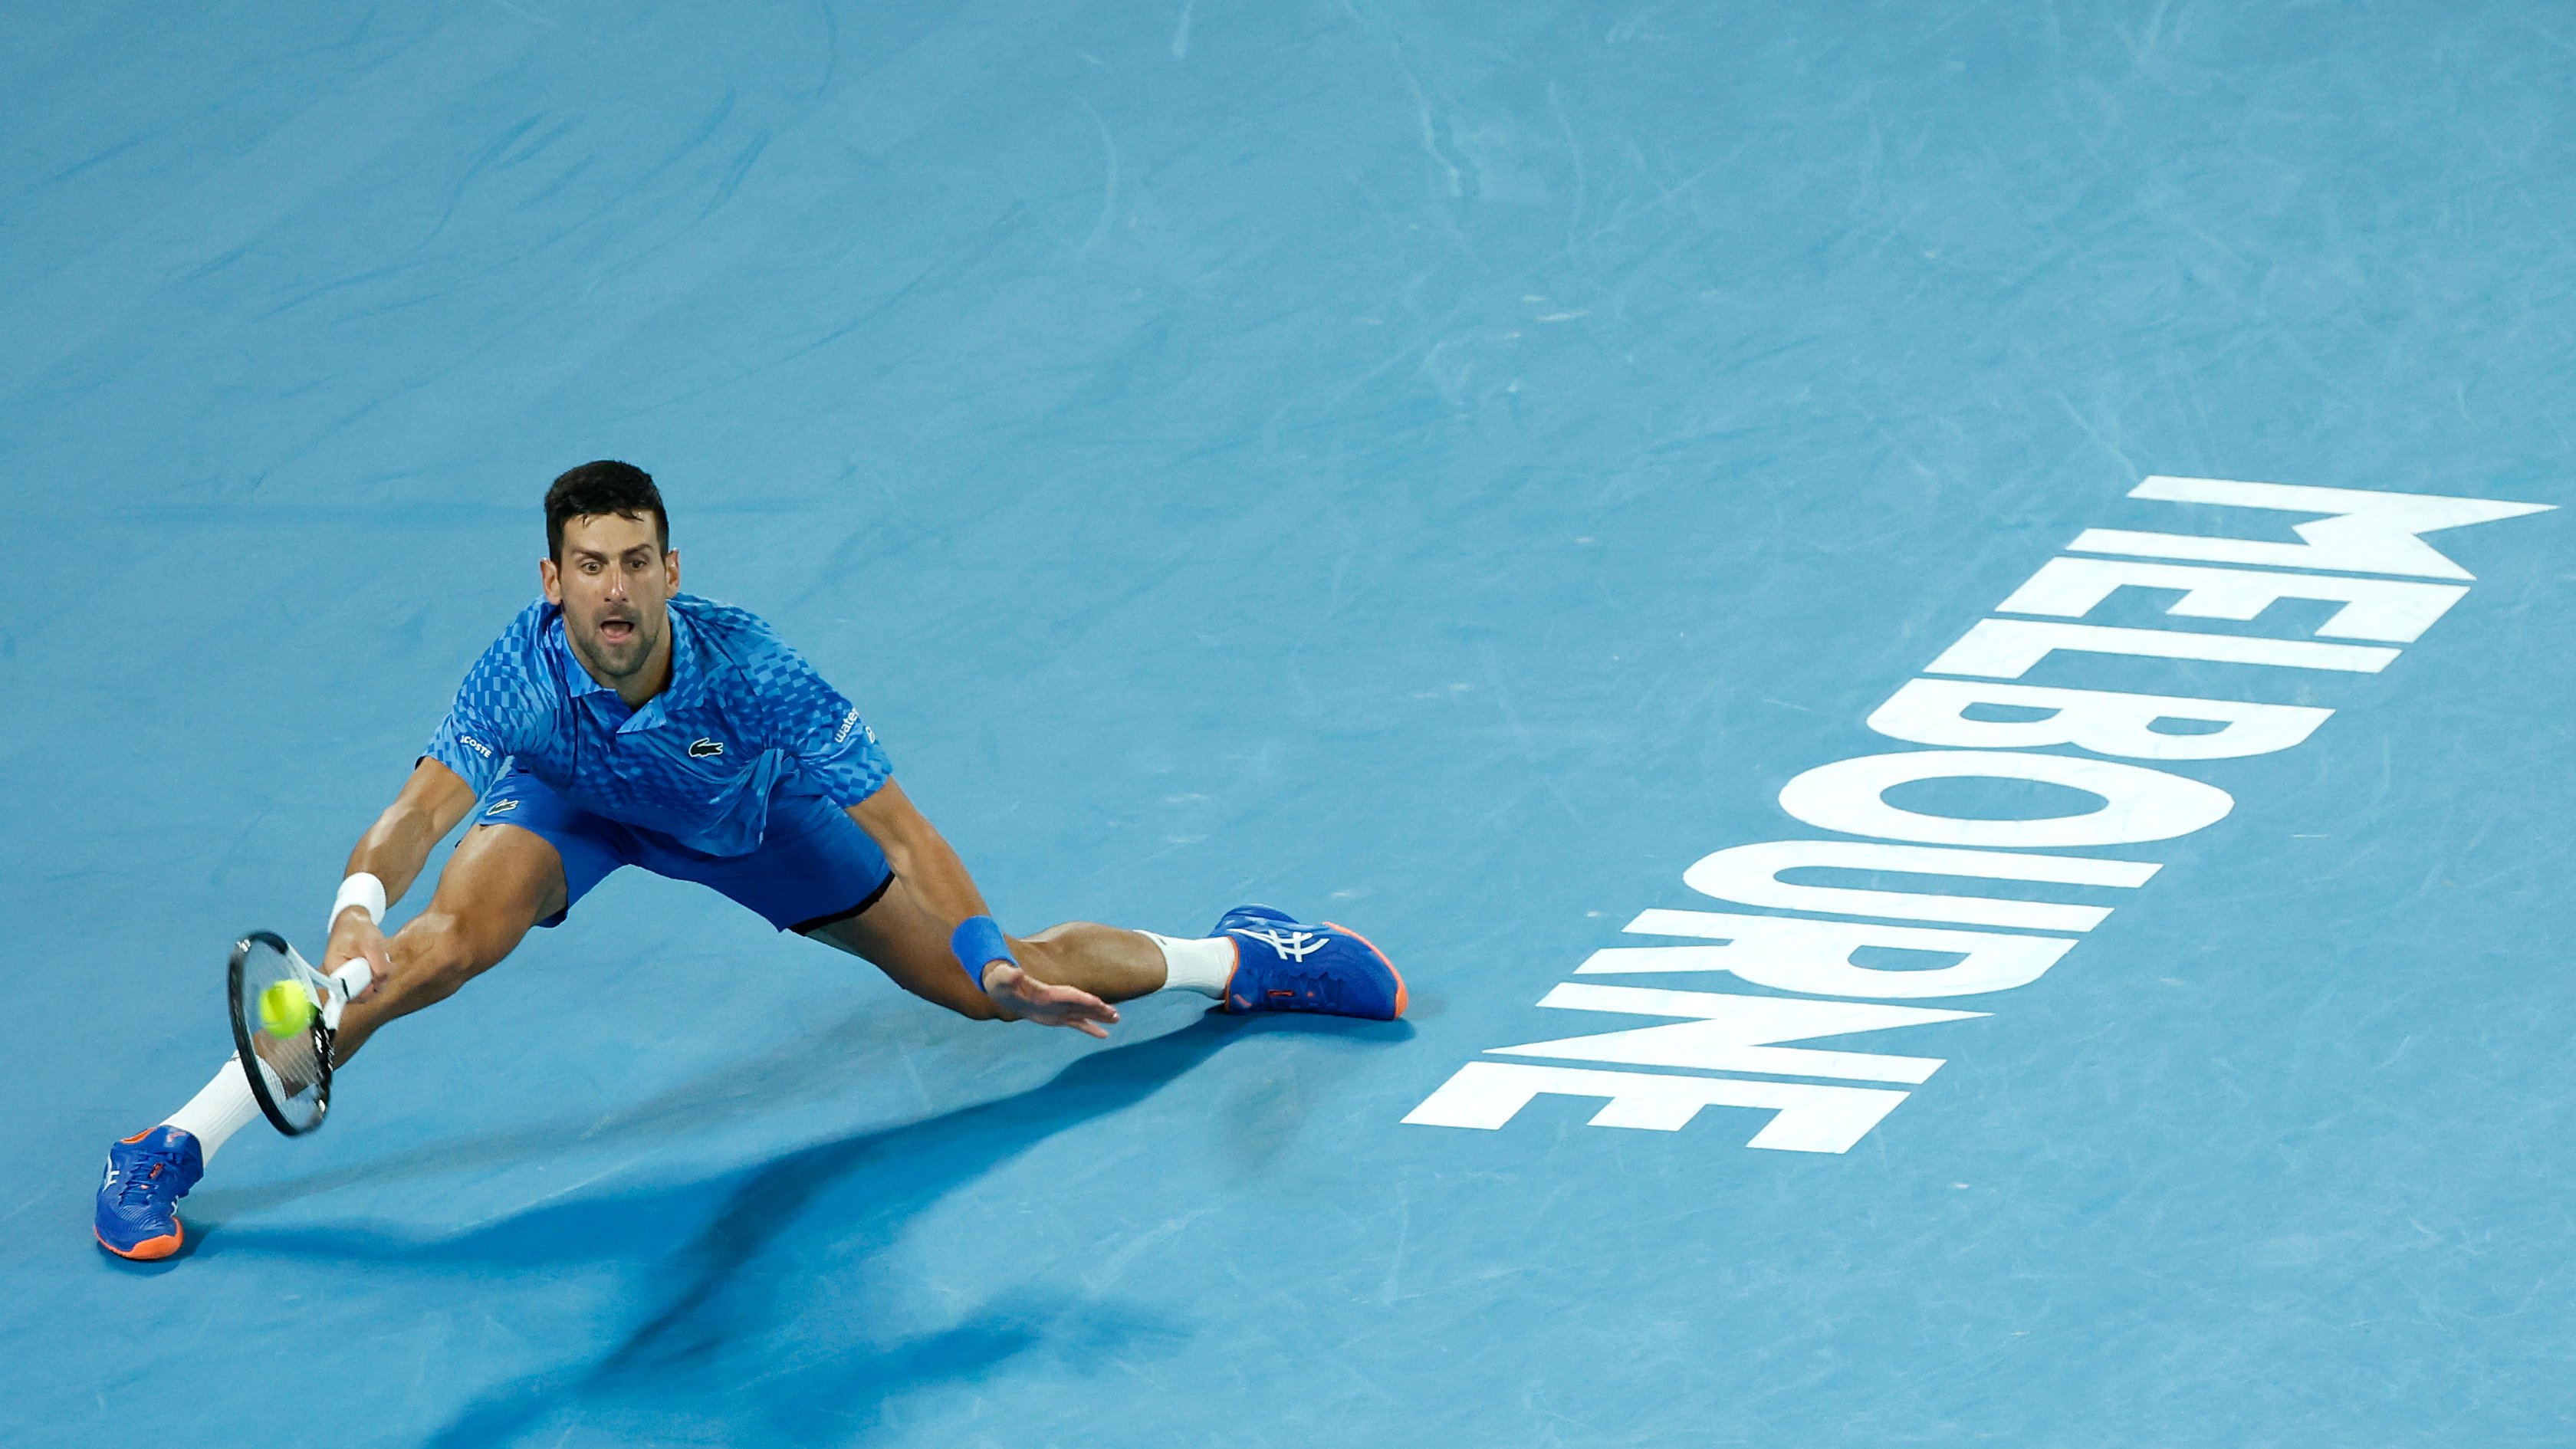 El serbio llegó a su 22 Grand Slam ganado y alcanzó el récord que mantenía Rafael Nadal. Foto Australian Open Twitter.